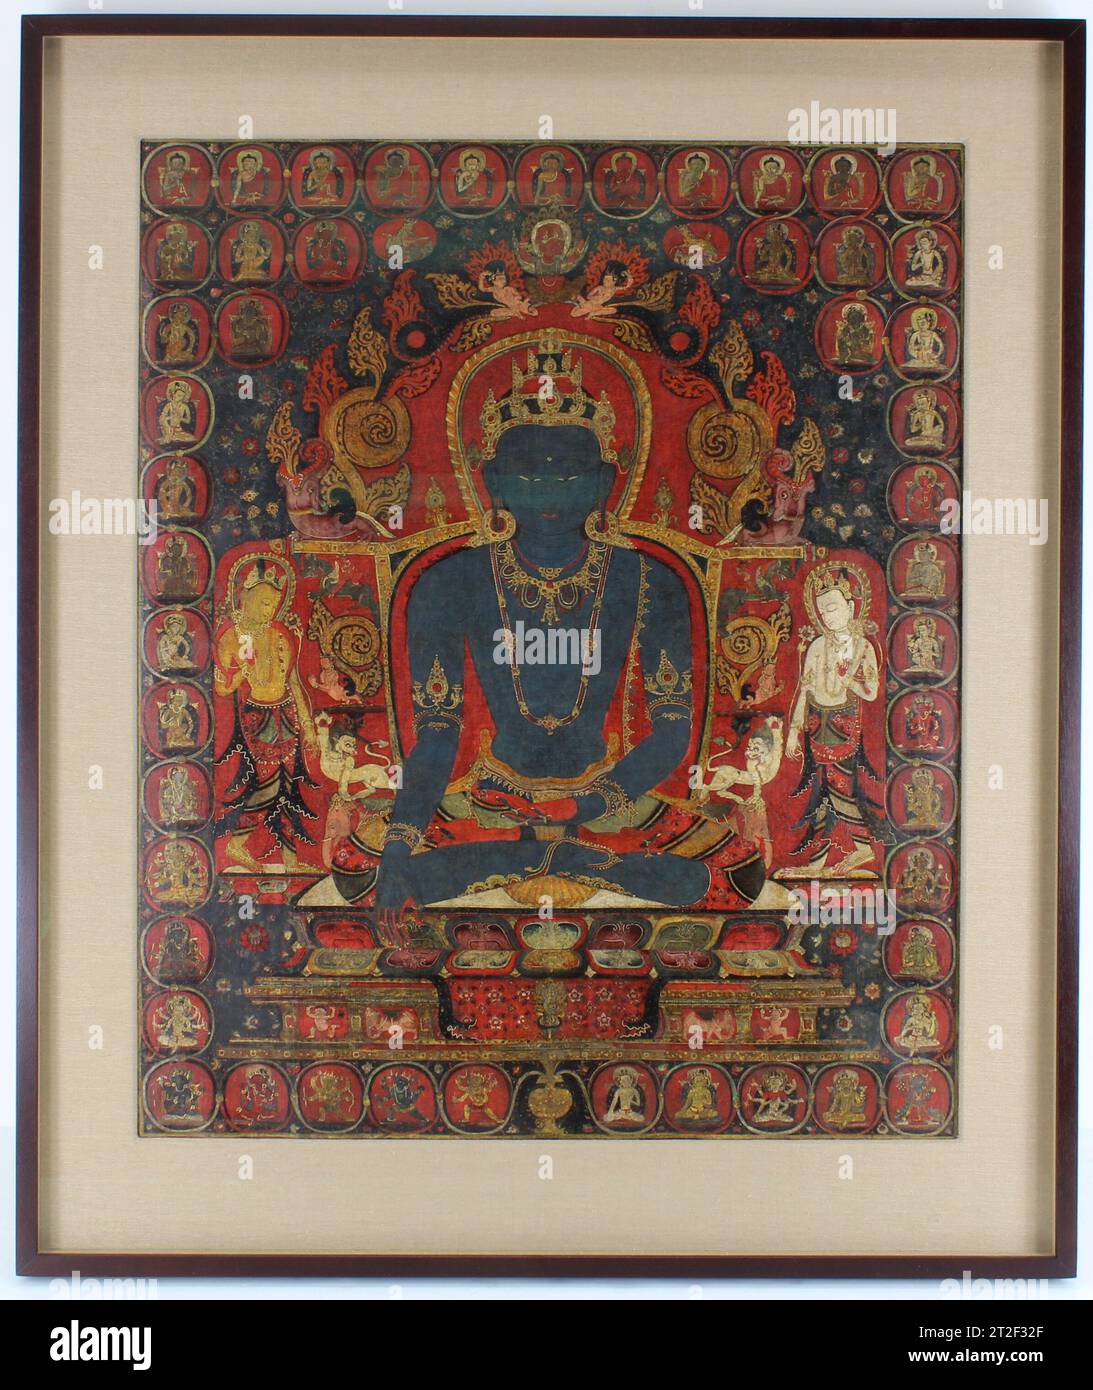 Il trascendente Buddha Akshobhya Unidentified (XIII secolo o inizio XIV secolo) Akshobhya, il “immobile”, è uno dei soggetti classici della pittura tibetana, una rappresentazione di uno dei cinque Buddha trascendenti che presiedevano il Buddhismo Vajrayana. Incarna la mente pura che distingue la realtà (superiore) dall'illusione (materiale), simboleggiata dal potere dello scettro vajra che mostra davanti al suo trono. Egli è inteso per incarnare la massima espressione del potere di pacificare l'aggressione e trasmutarla in saggezza. Questo dipinto funzionava come uno di cinque di questi dipinti, Foto Stock